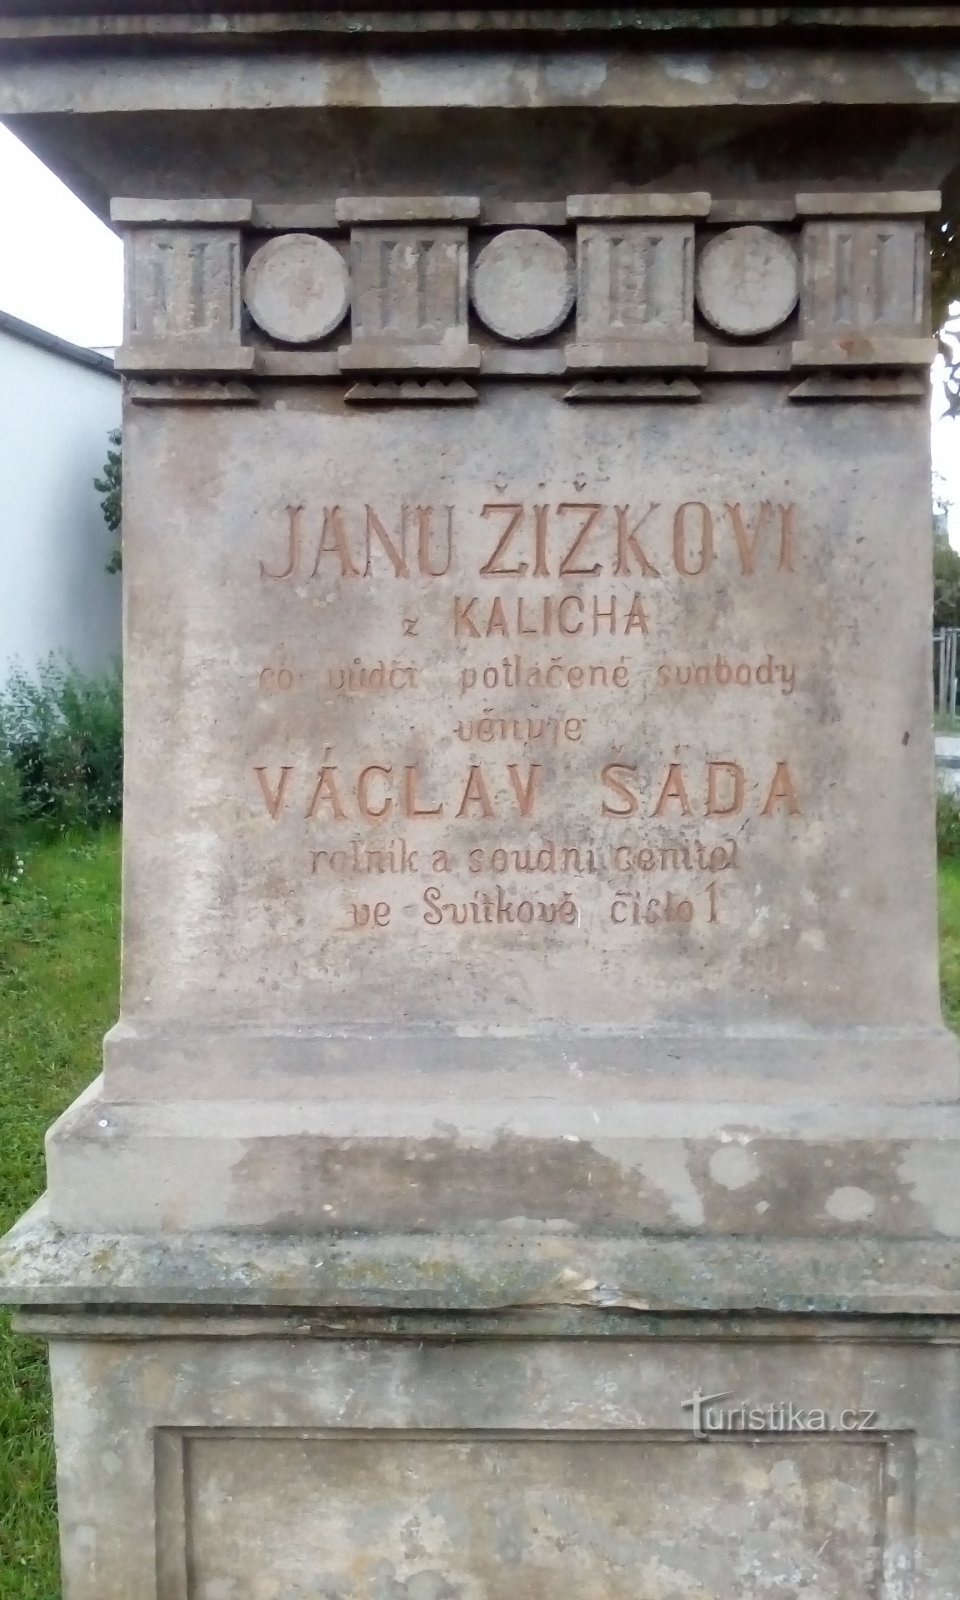 Monument till Jan Žižek i Svítkov